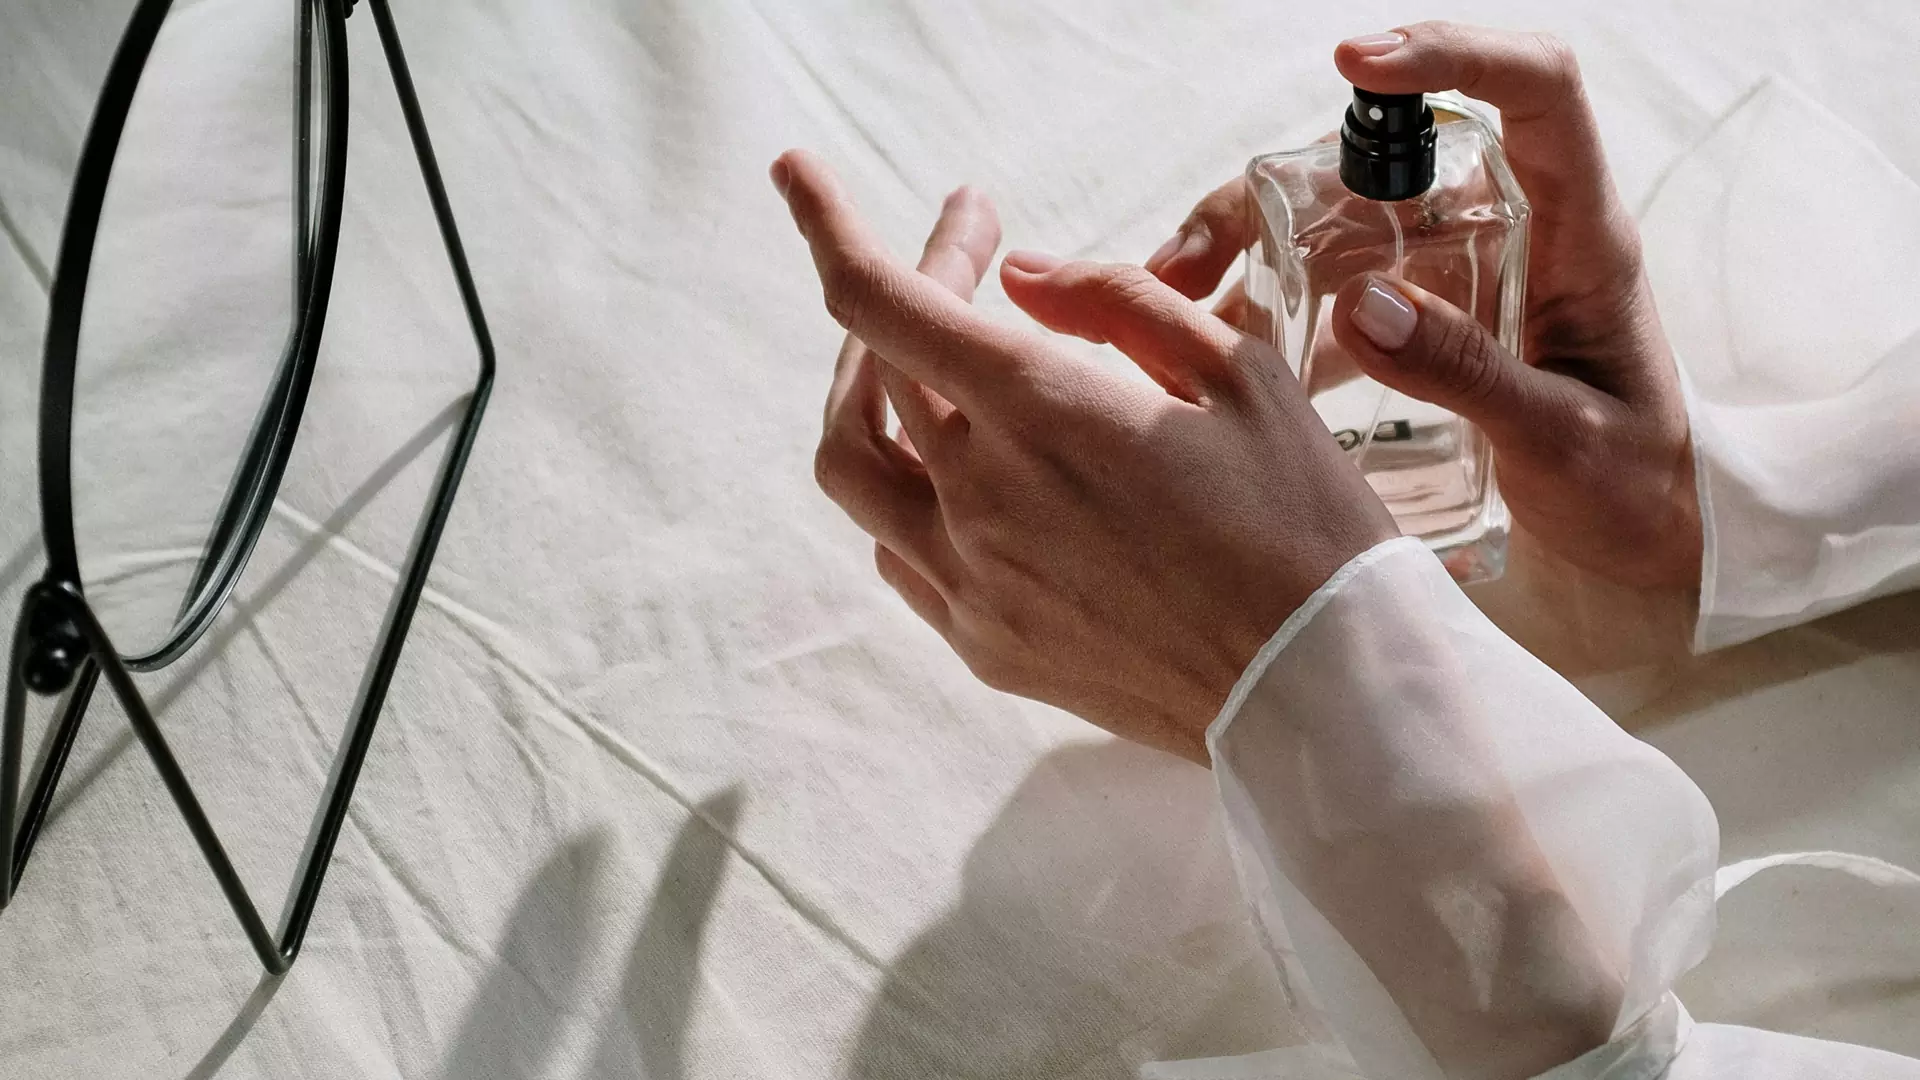 Te niszowe perfumy zmieniają pH w zależności od skóry osoby, która je nosi. Świeże i naturalne